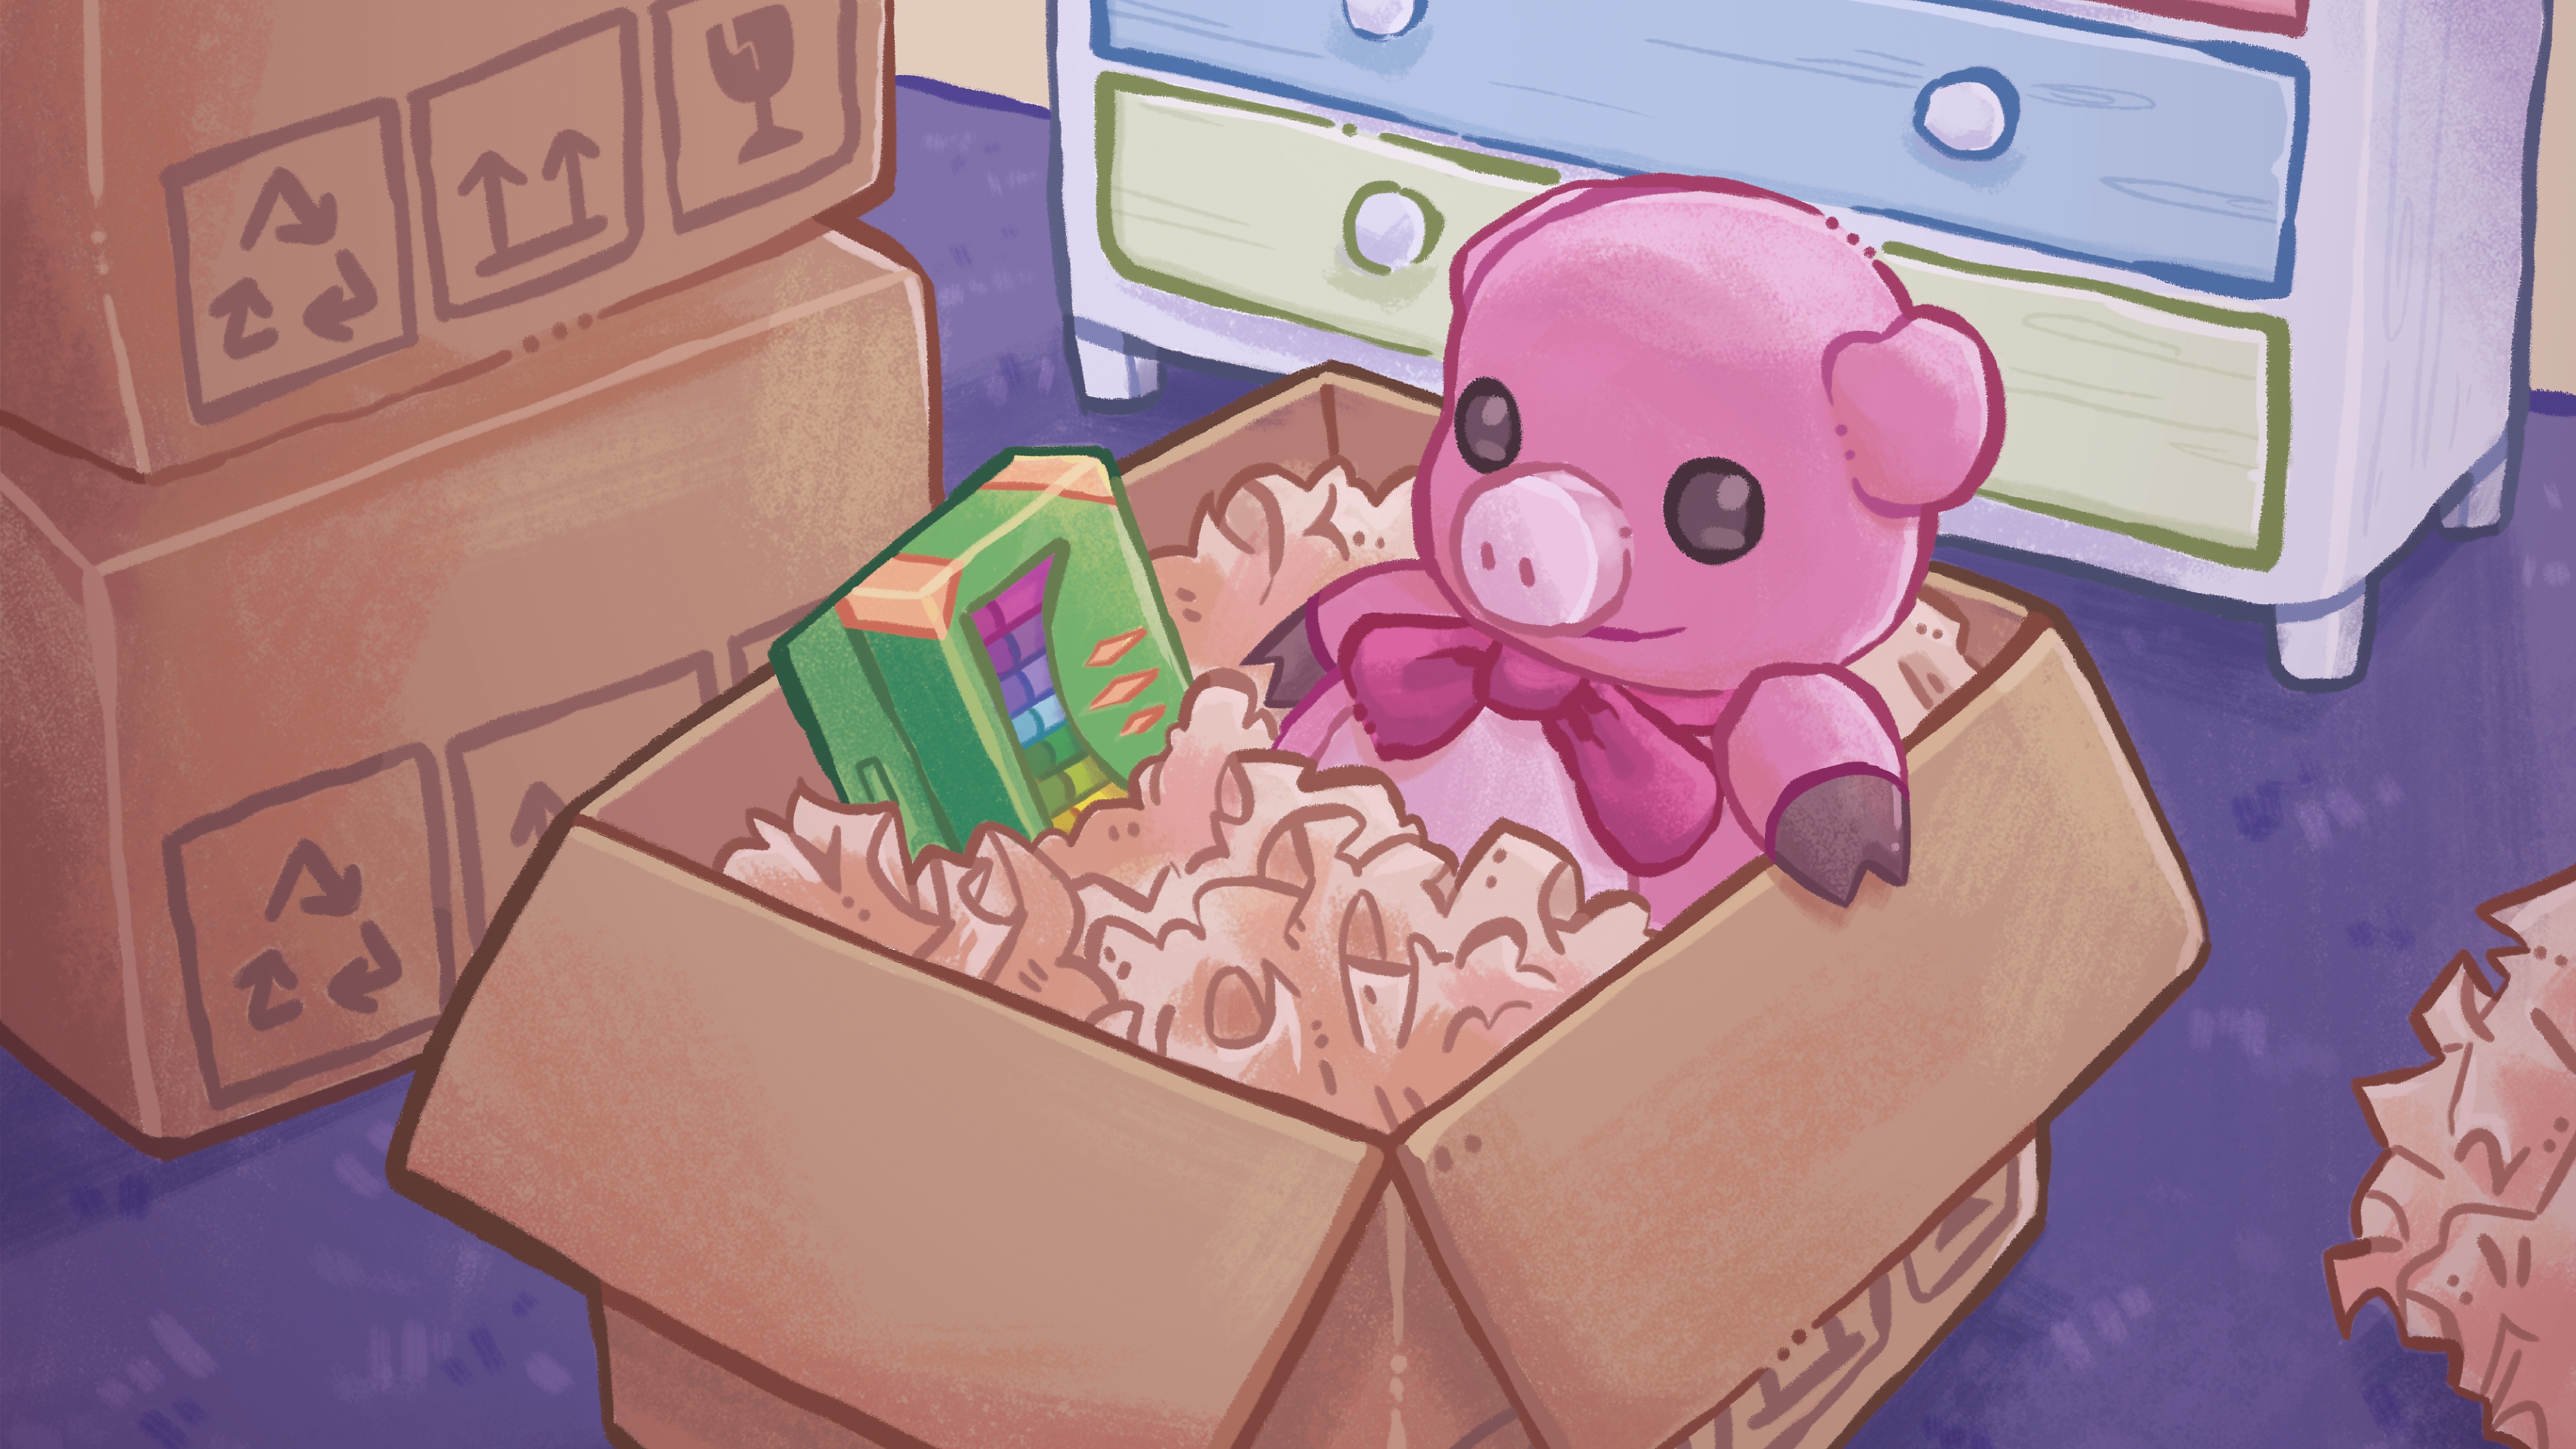 Ilustrație cu pachet desfăcut, cu un ursuleț și creioane colorate într-o cutie de carton, desenate manual.